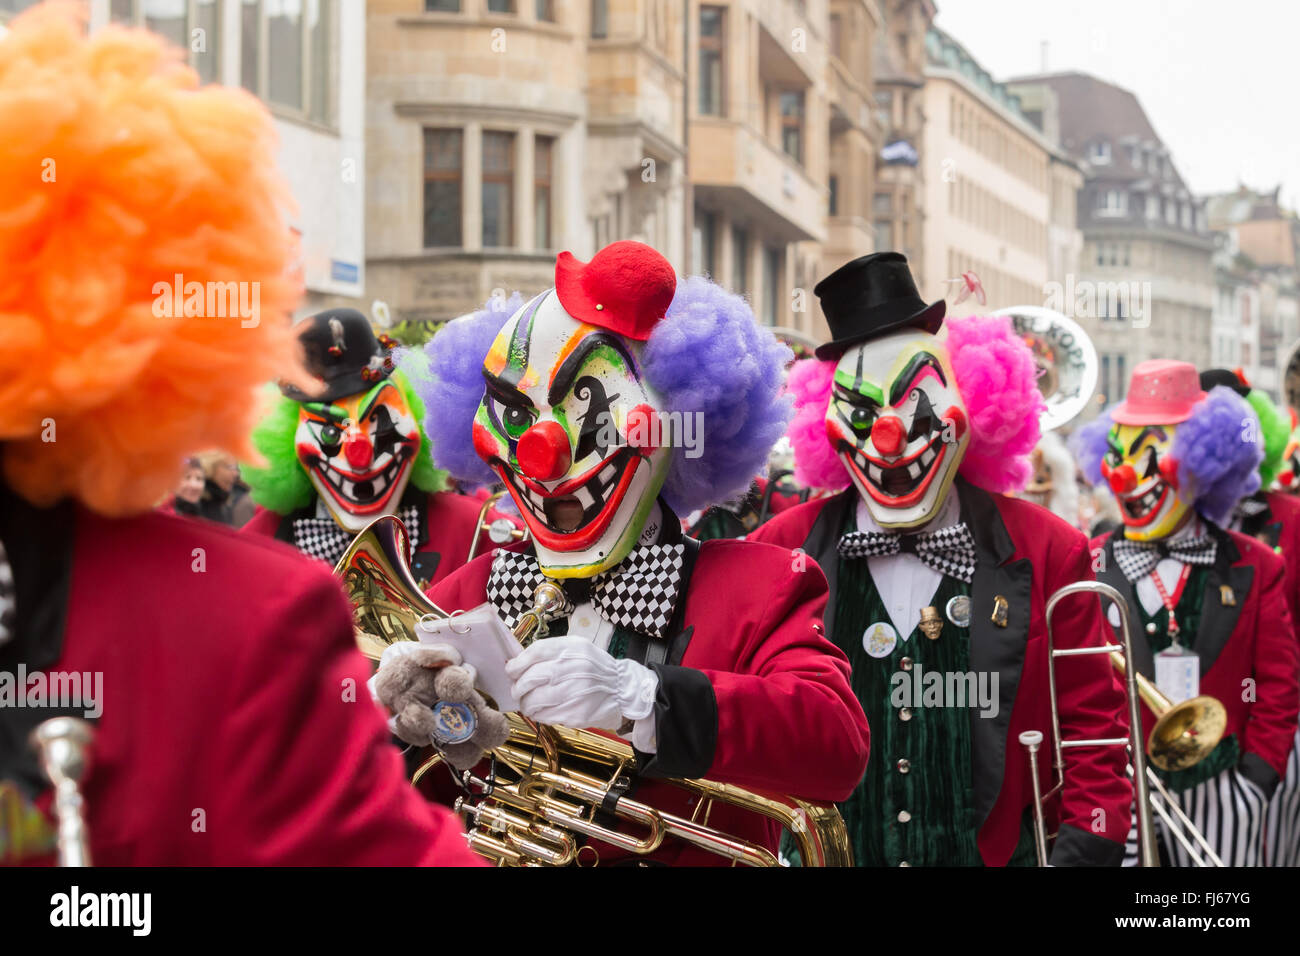 A Clown Mask At Basel Carnival In Switzerland Stockfotos und -bilder Kaufen  - Alamy